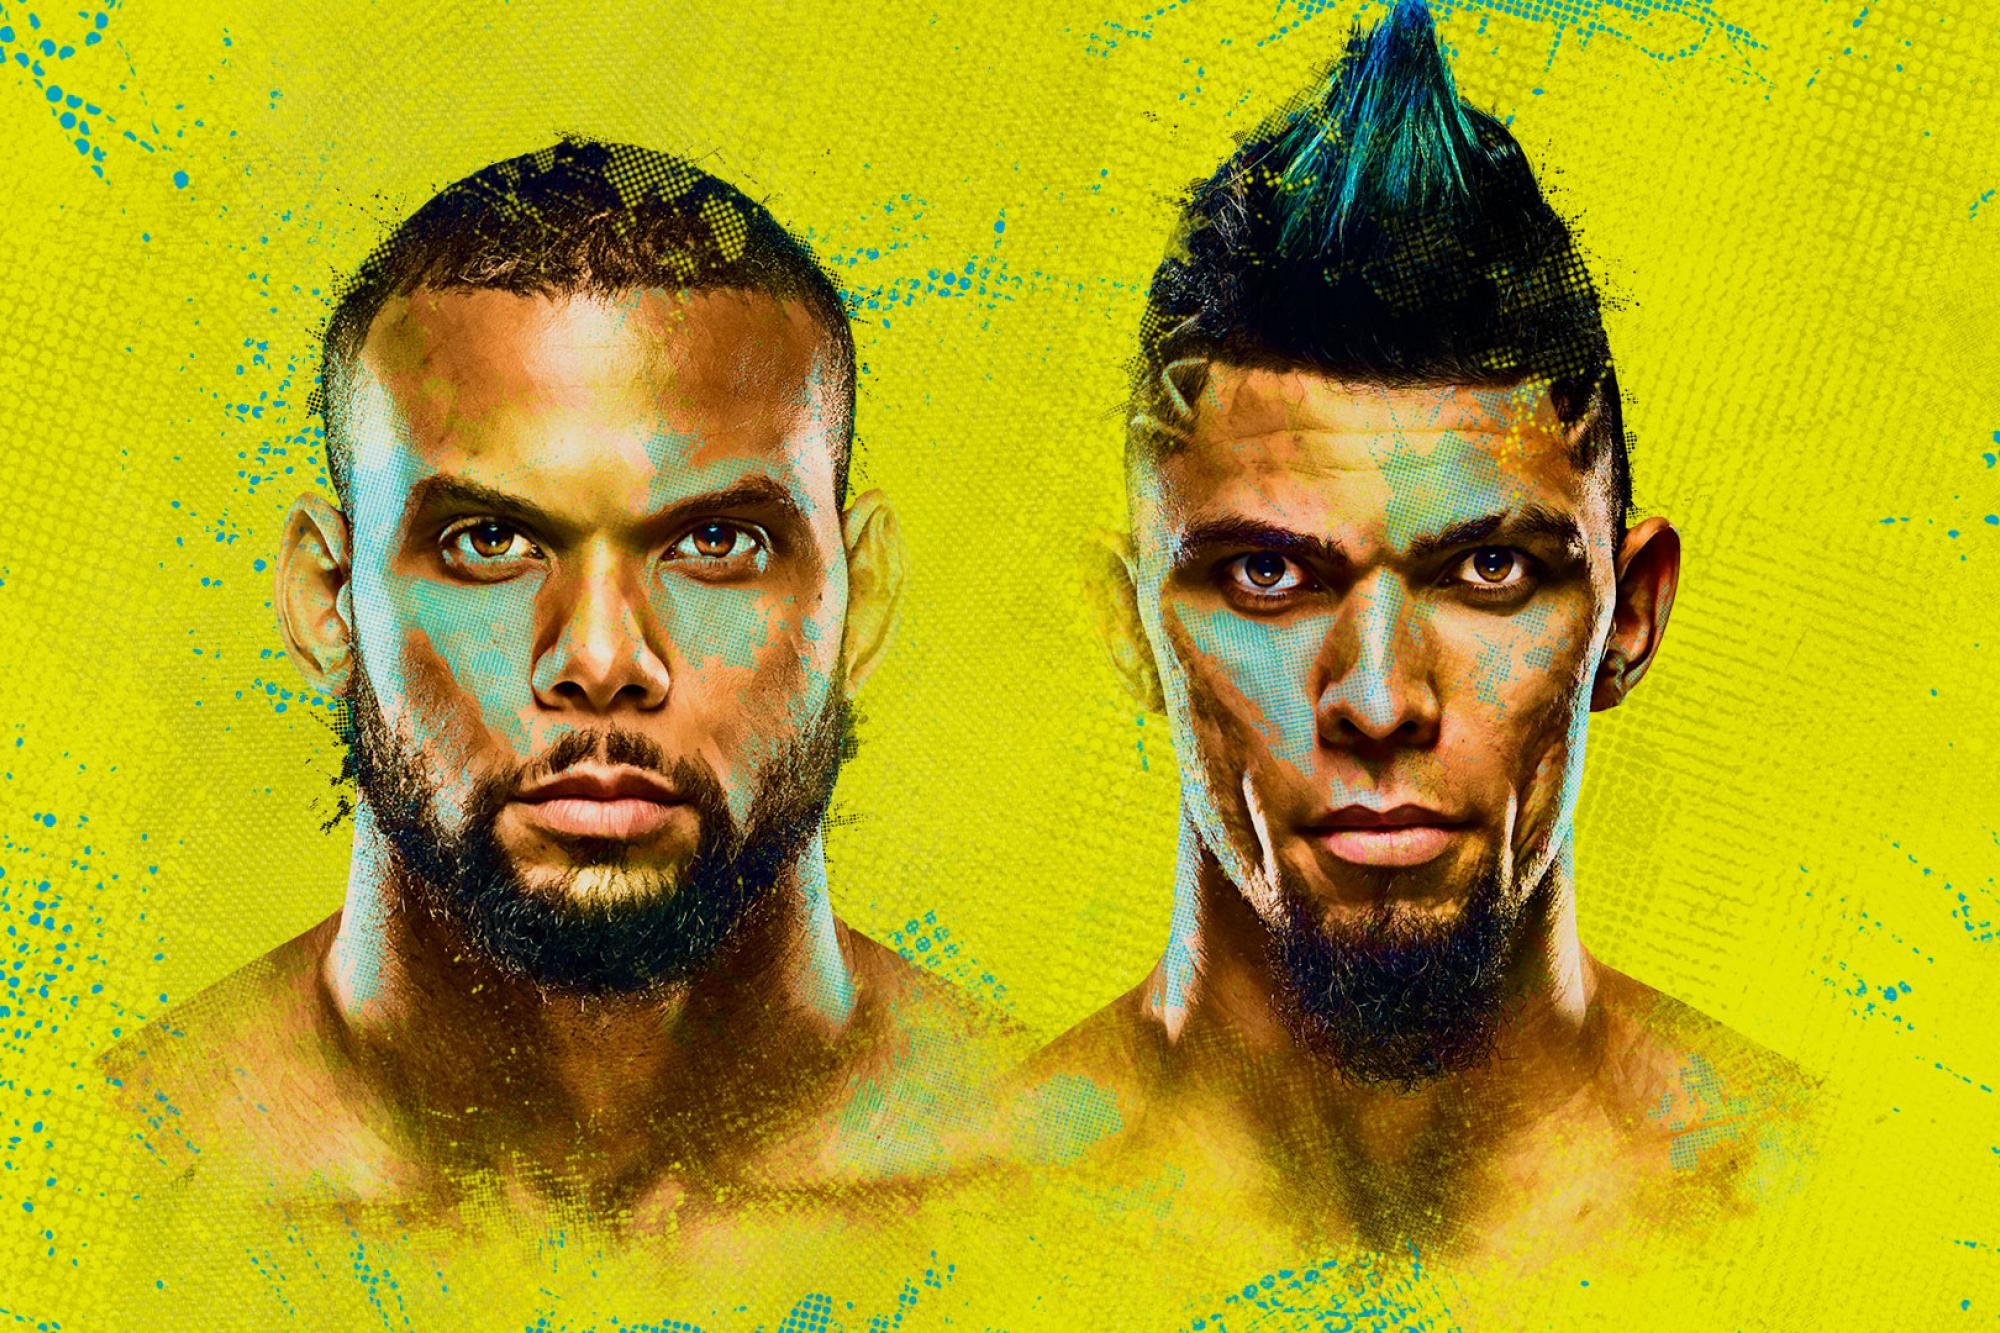 UFC on ESPN+ 51 - Las Vegas - Poster et affiche